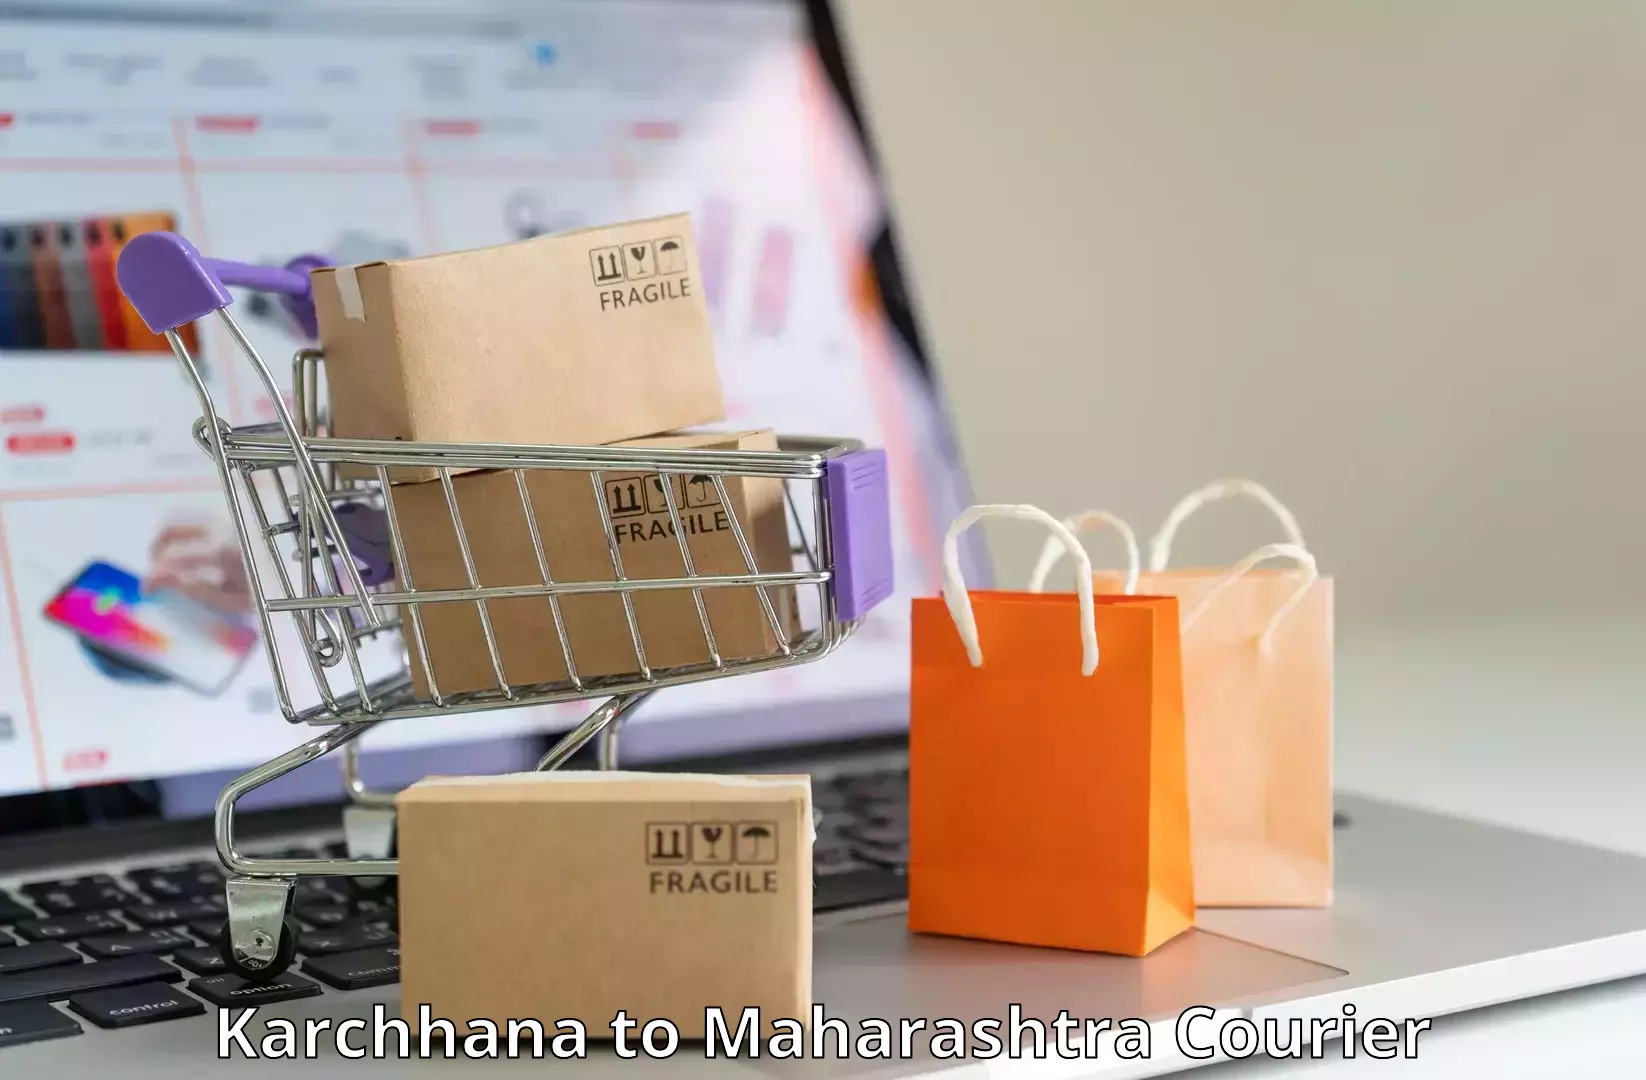 Efficient parcel delivery Karchhana to Maharashtra